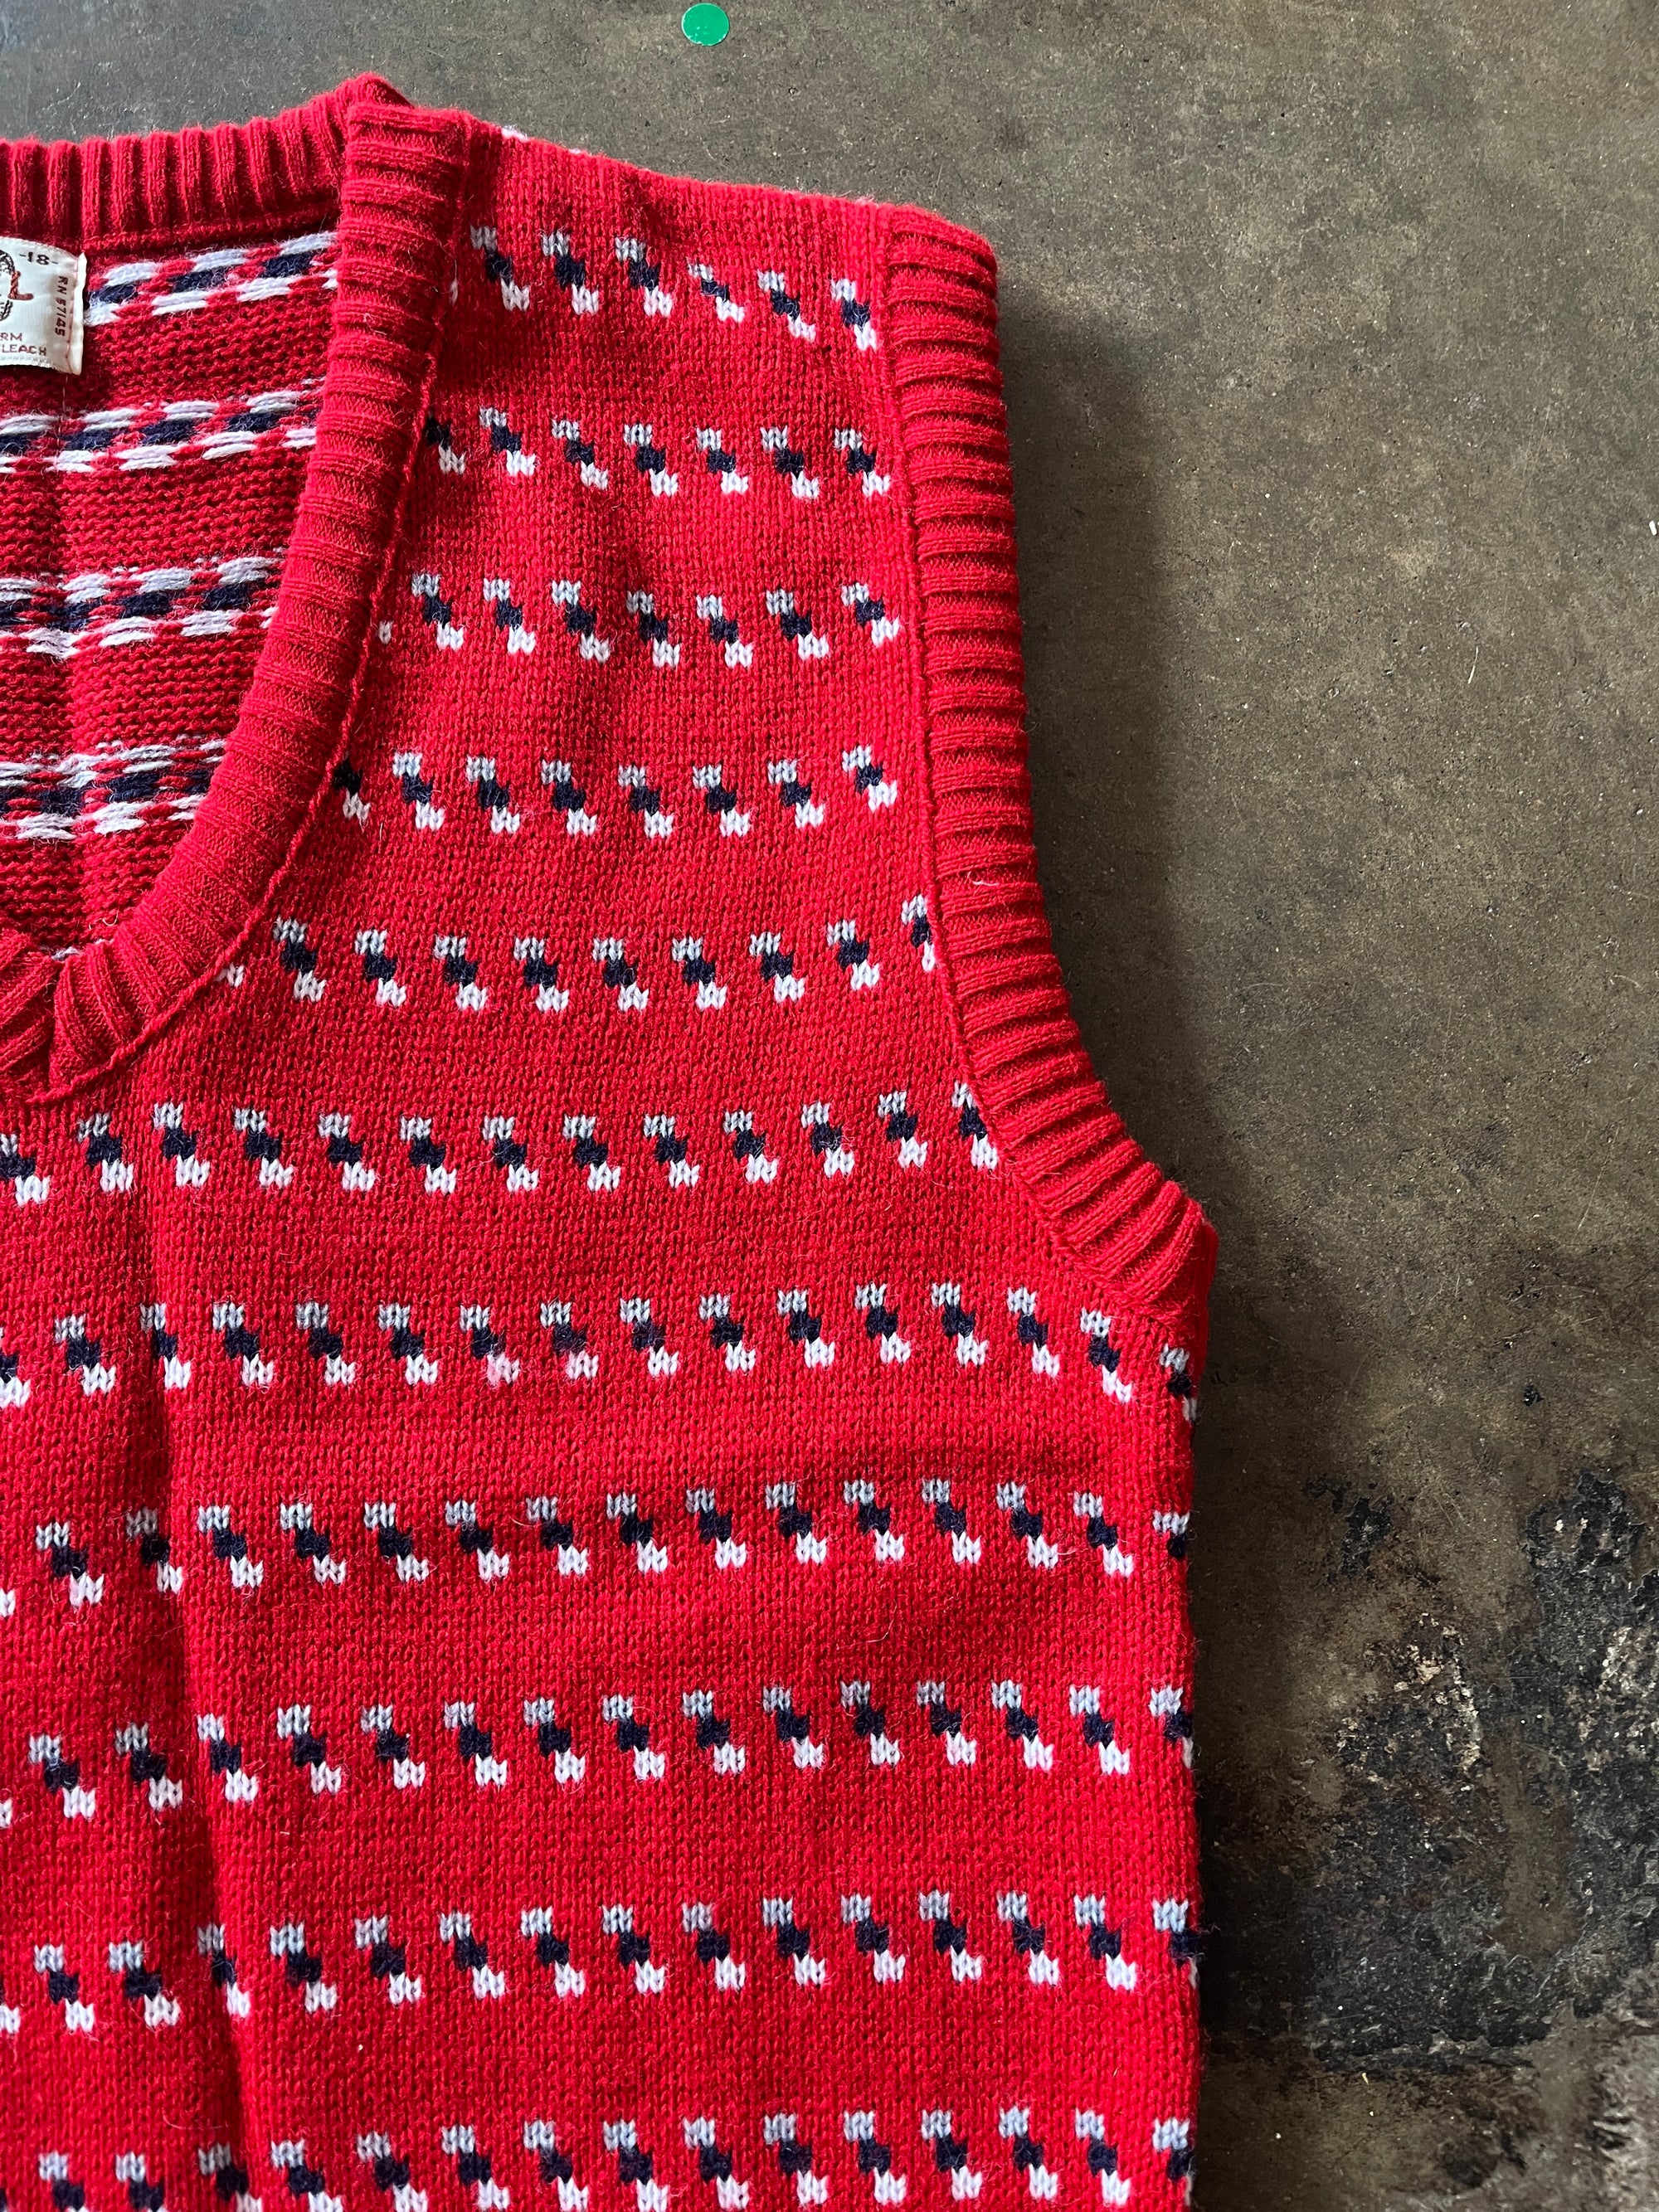 Barrel Red Patterned Sweater Vest